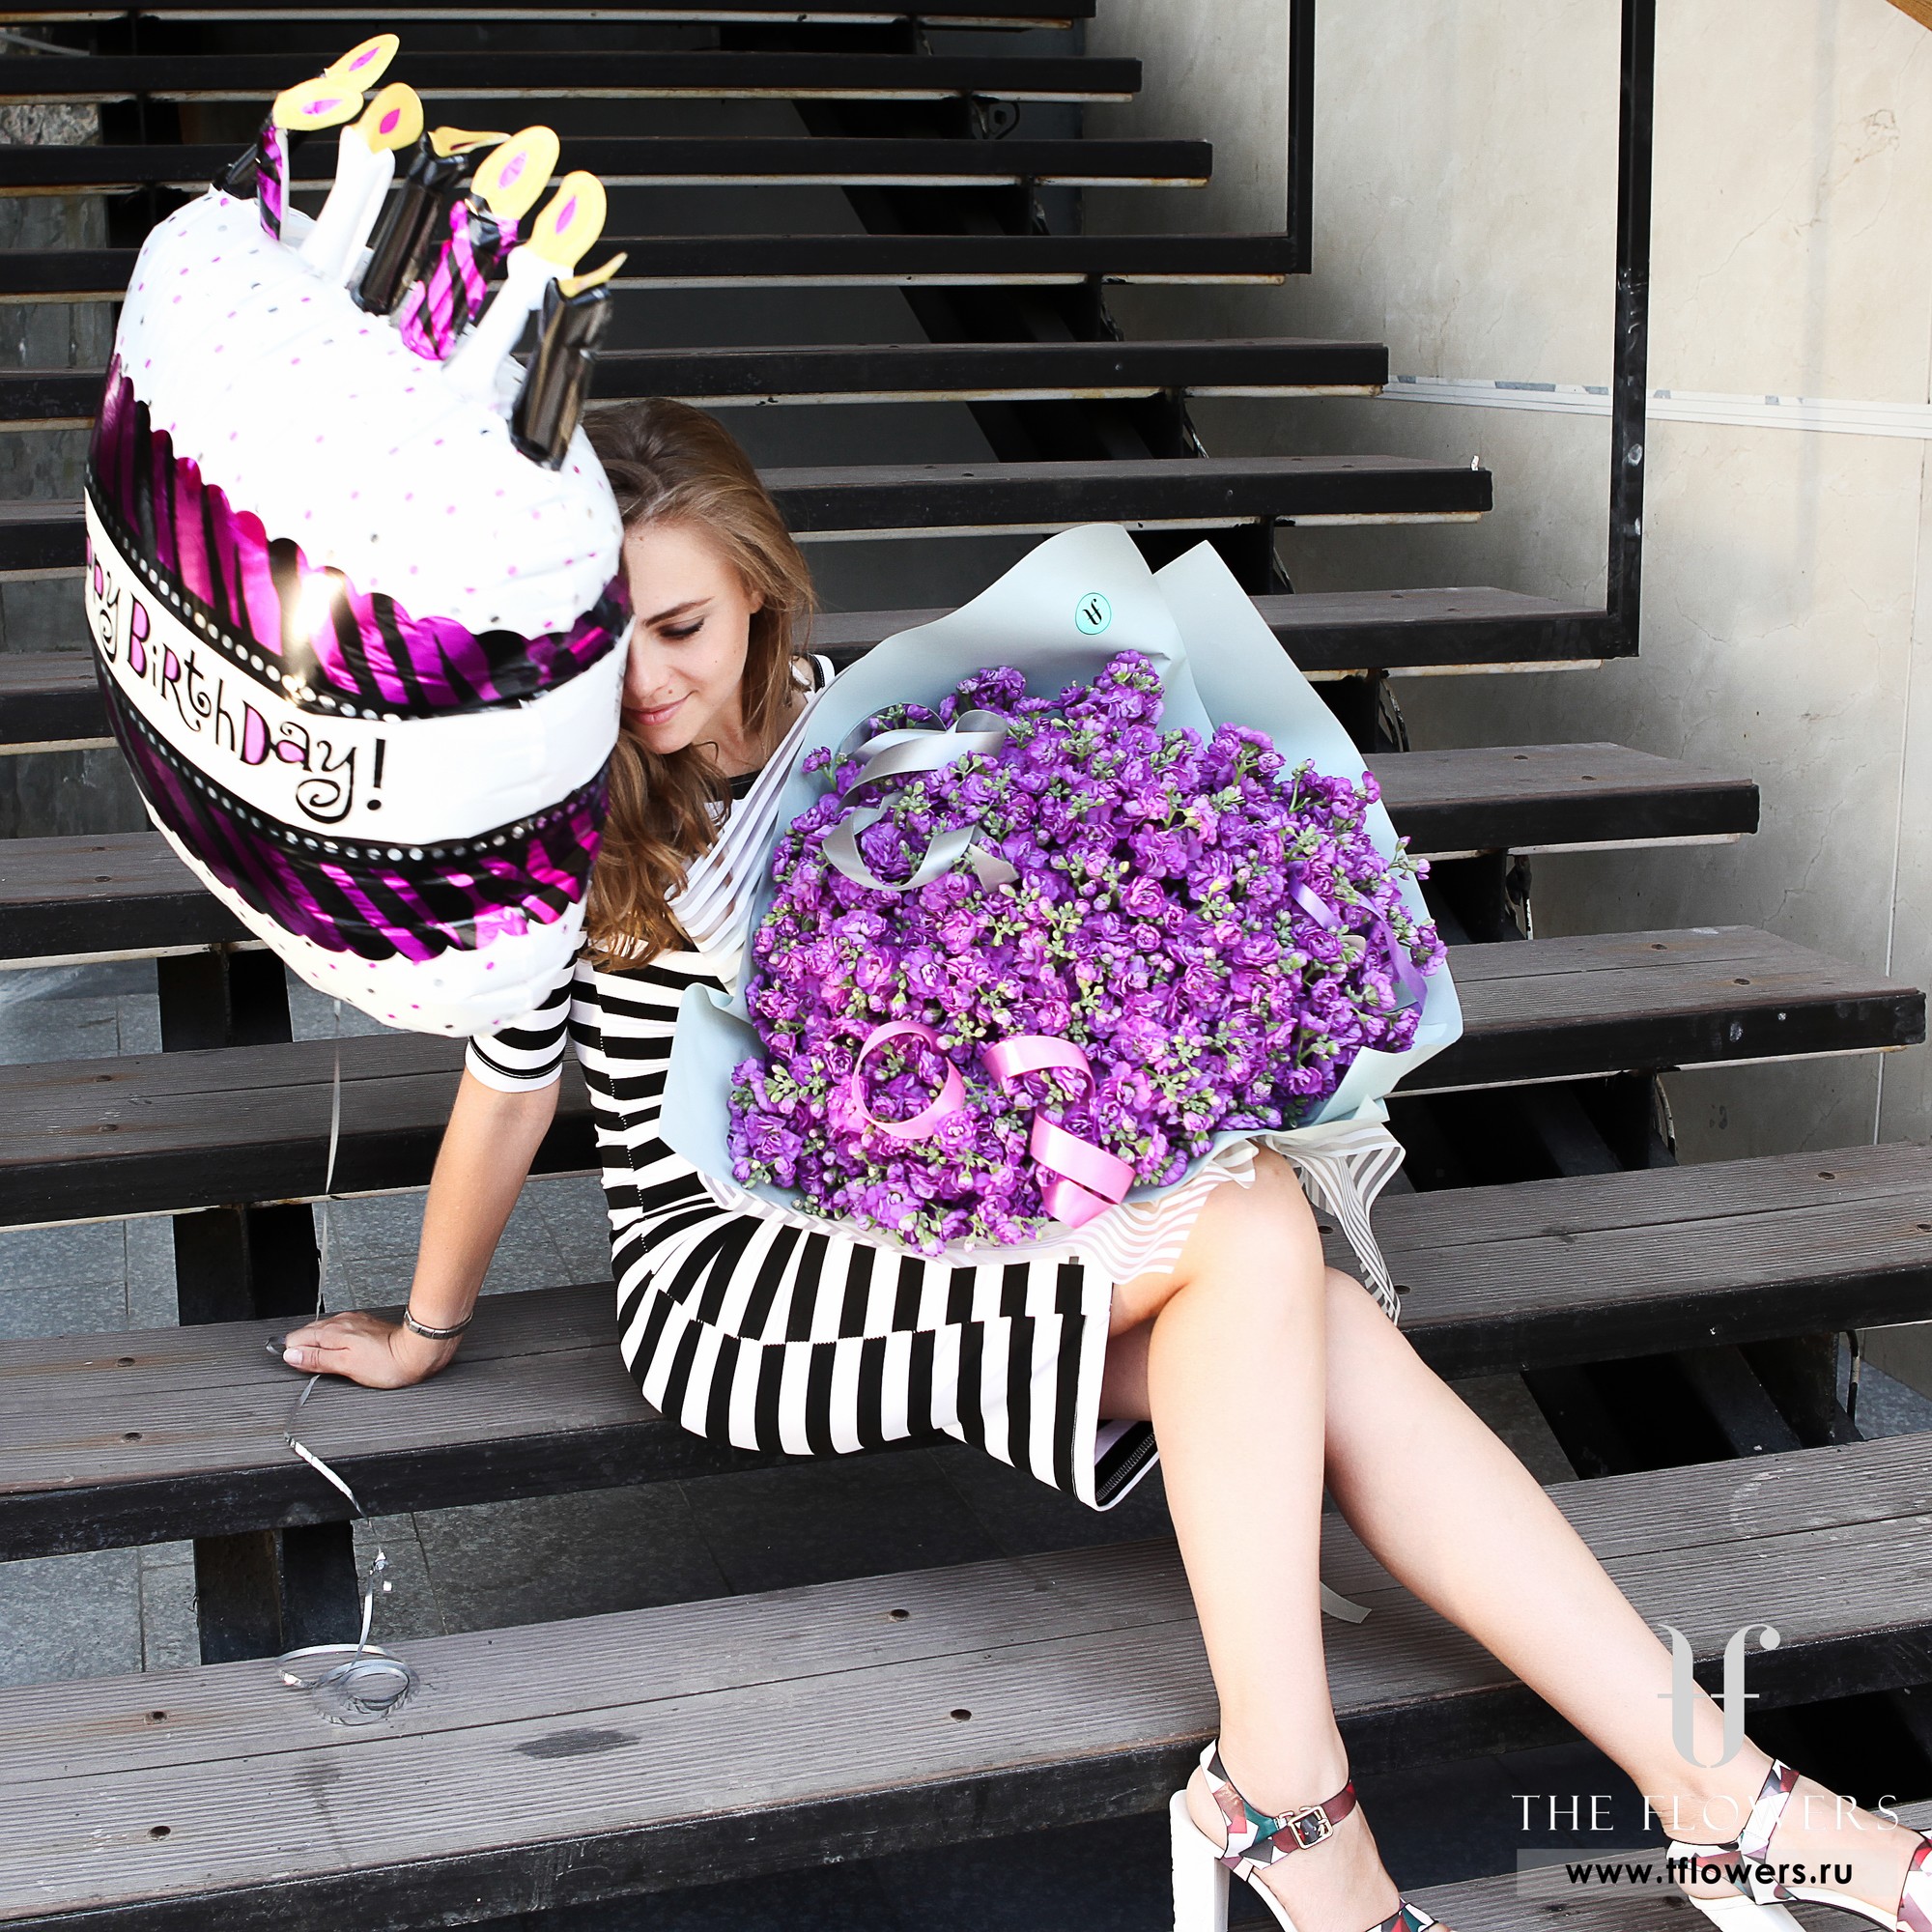 Luxurious bouquet of purple matthiola PURPLE SOUL